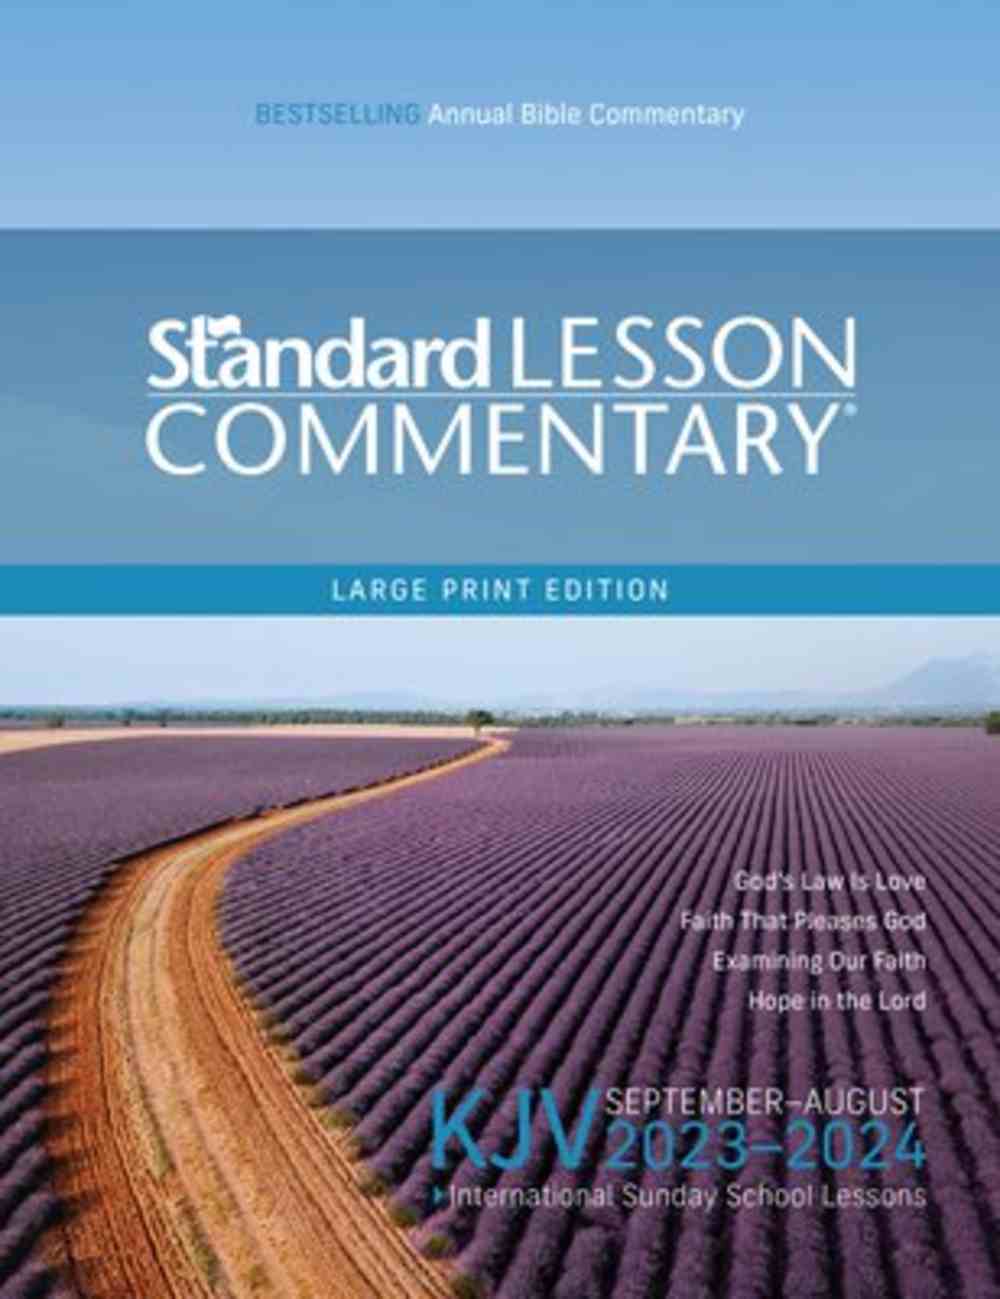 KJV Standard Lesson Commentary Large Print Edition 20232024 (Kjv